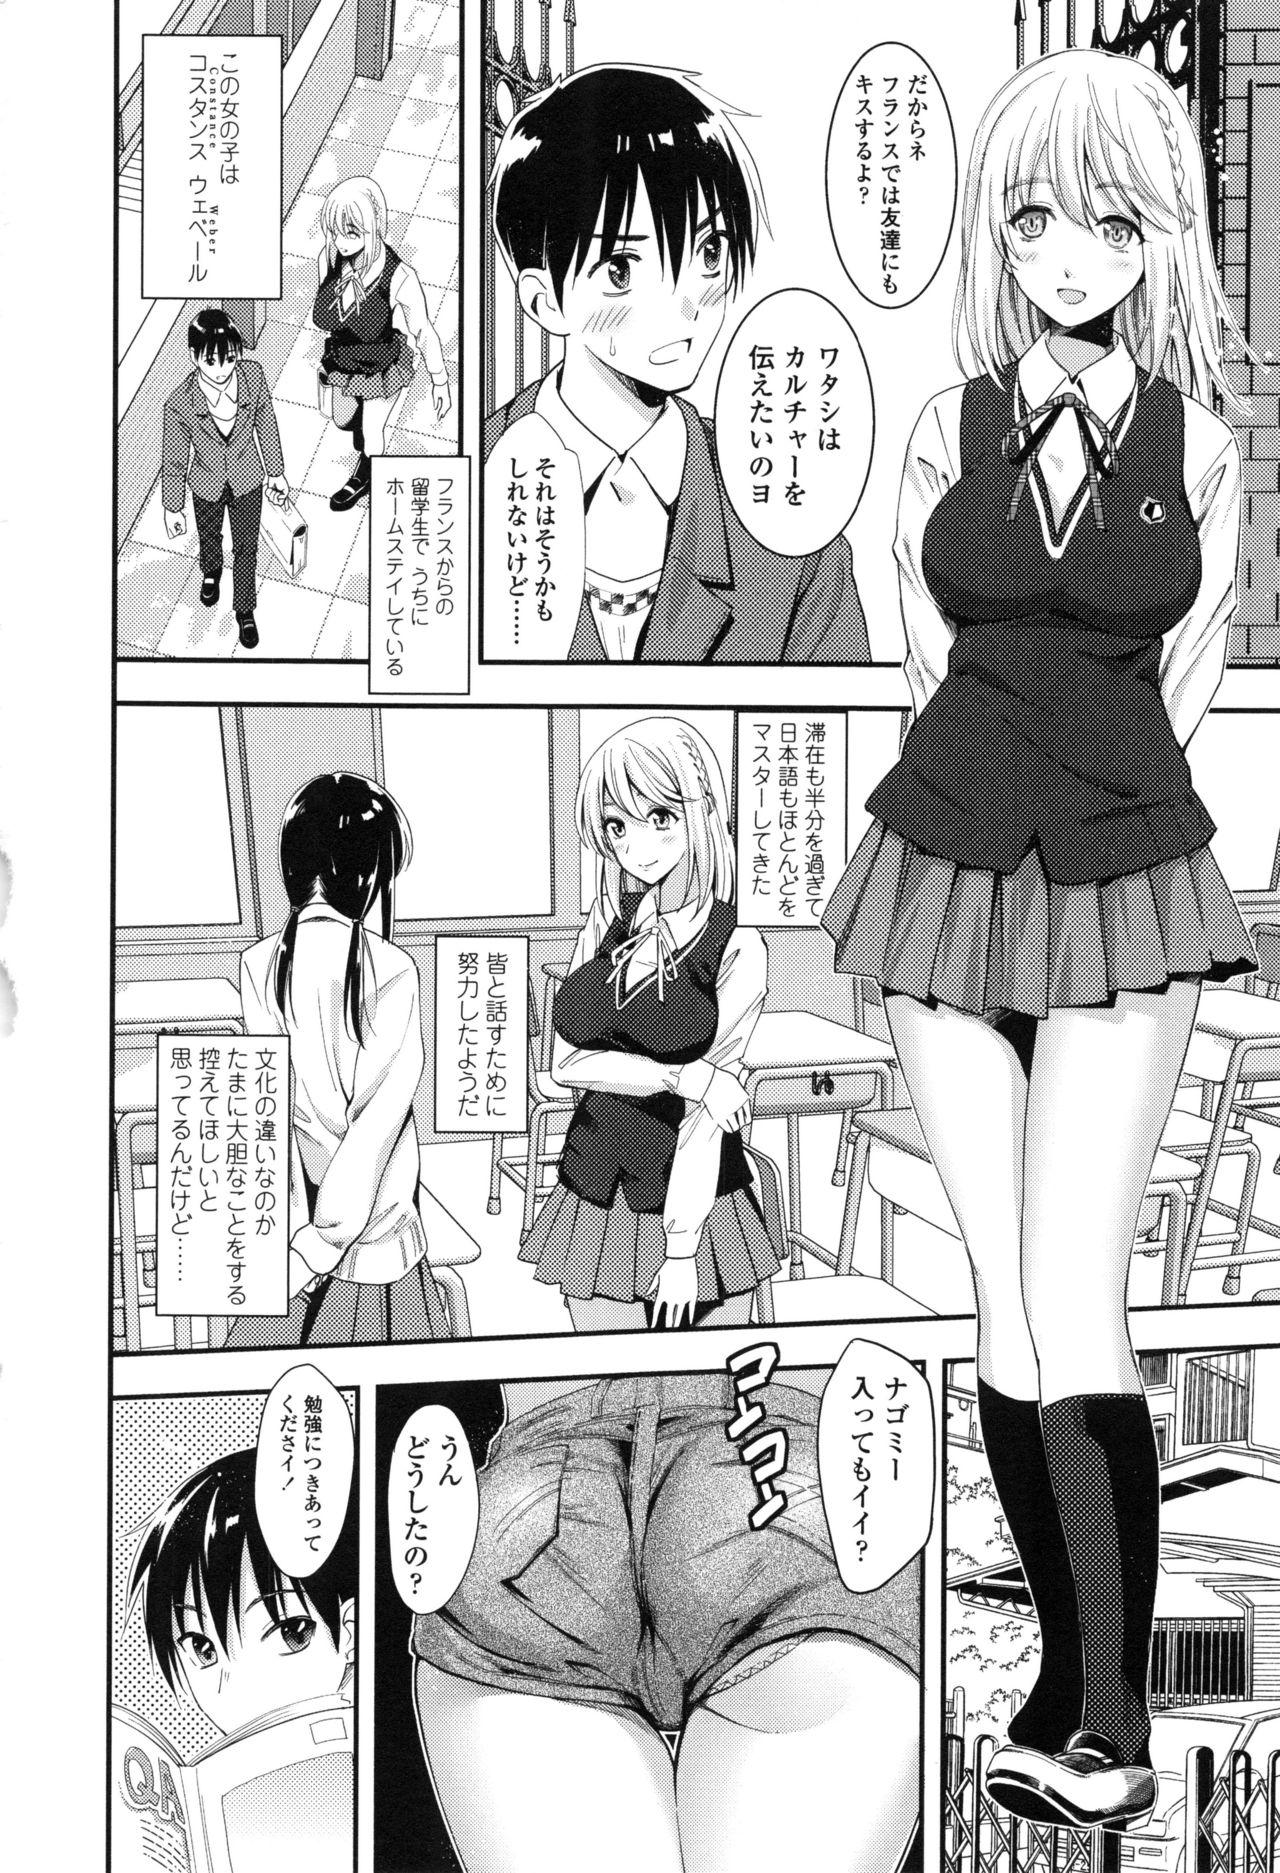 Seifuku no Mama Aishinasai! - Love in school uniform 129